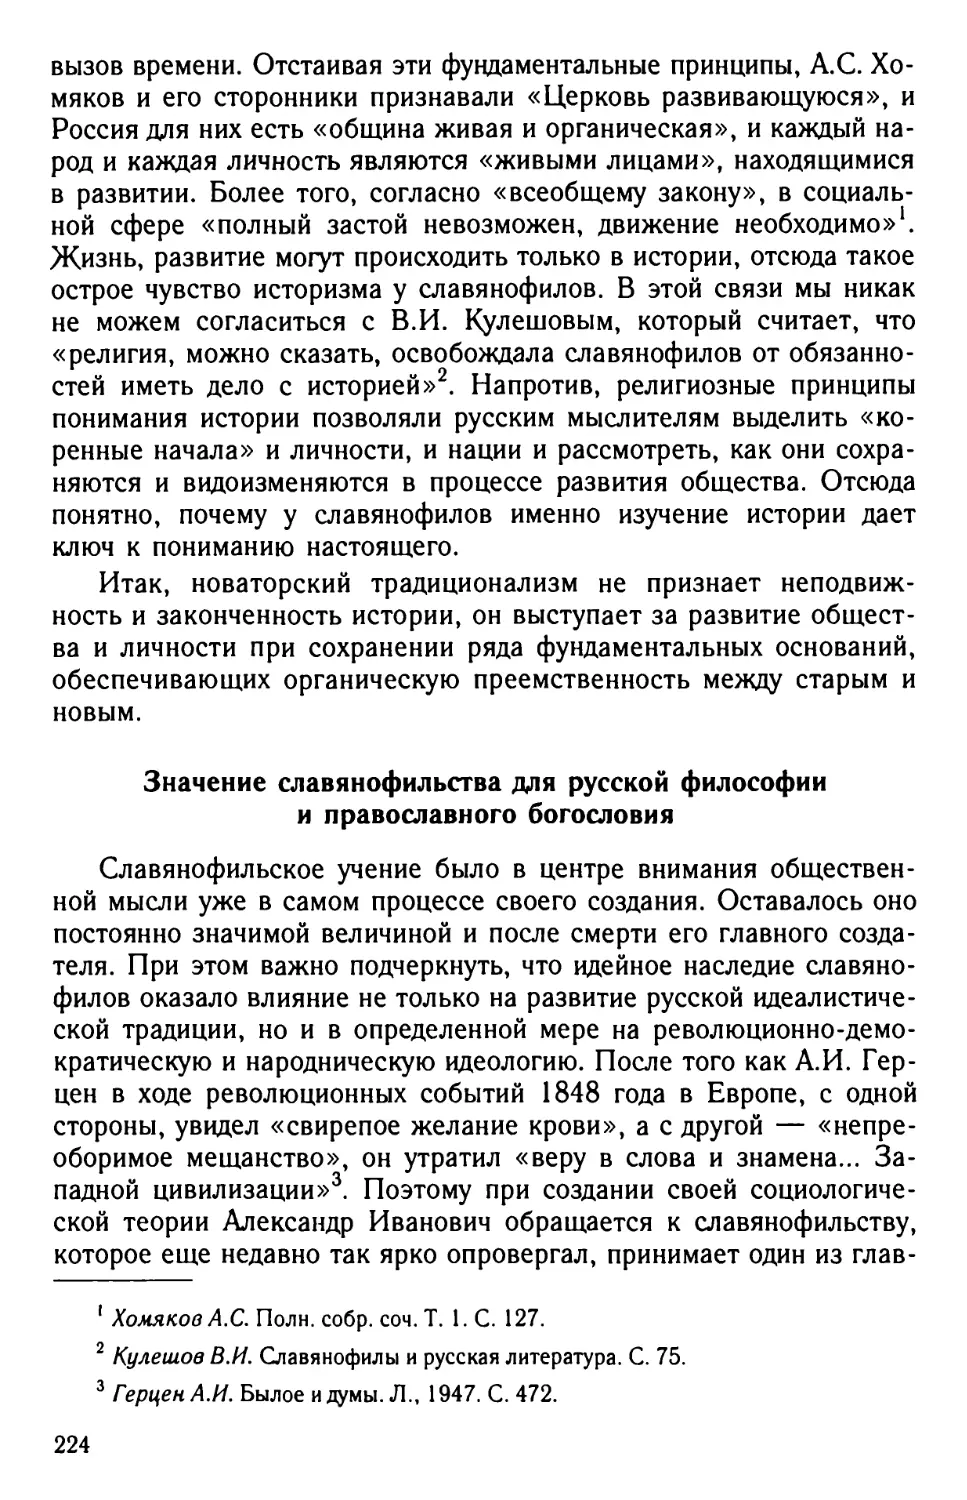 Значение славянофильства для русской философии и православного богословия